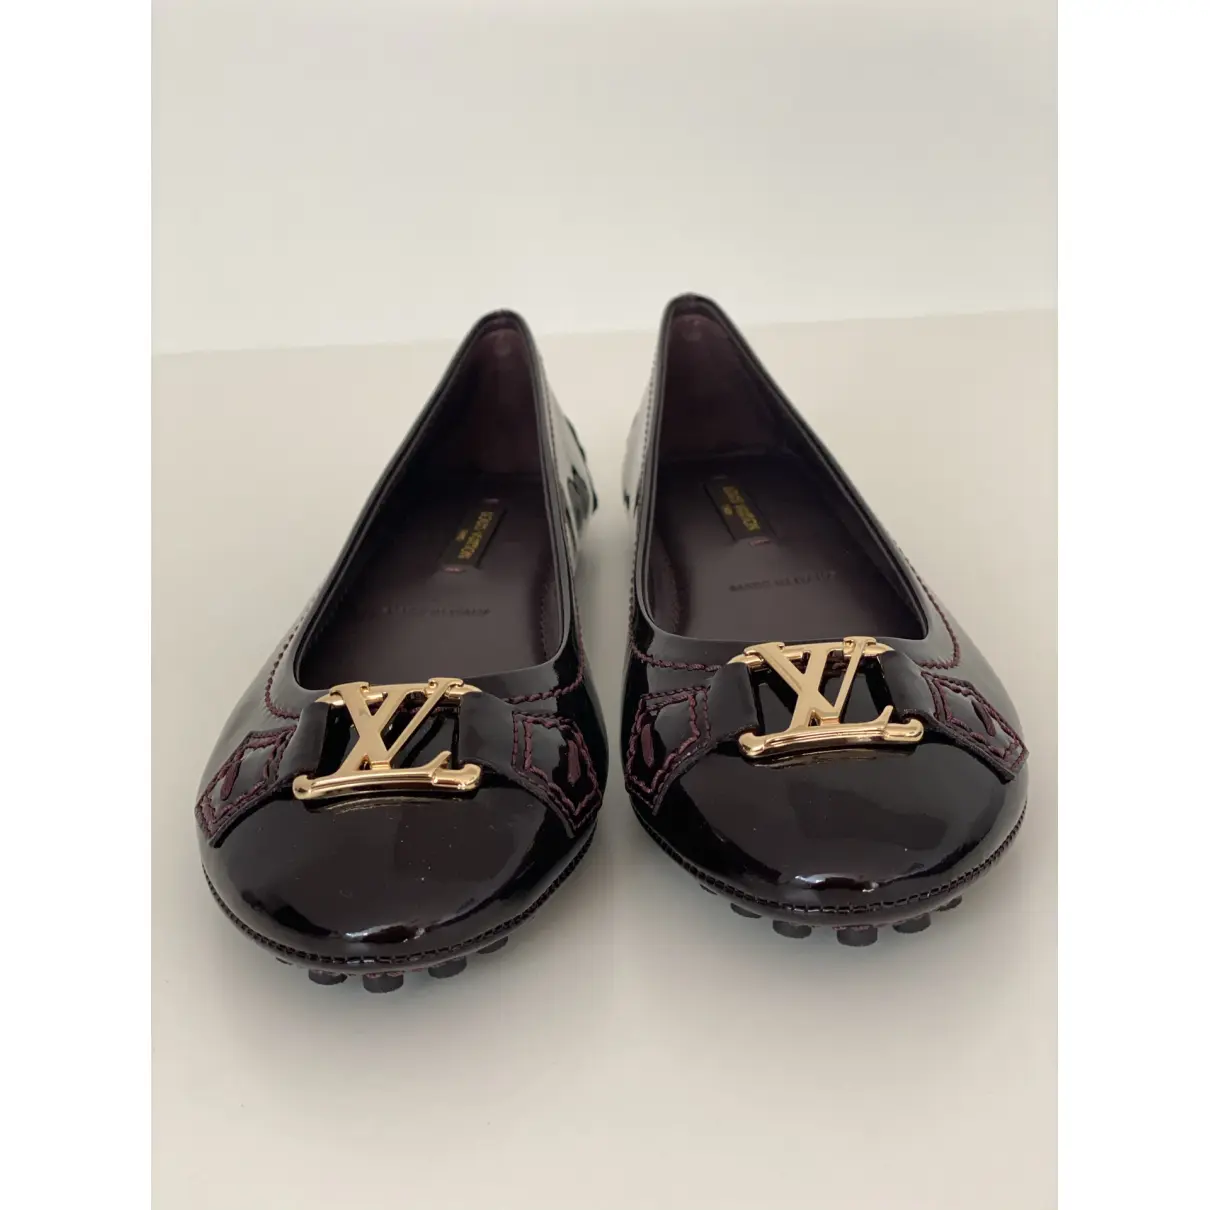 Buy Louis Vuitton Patent leather ballet flats online